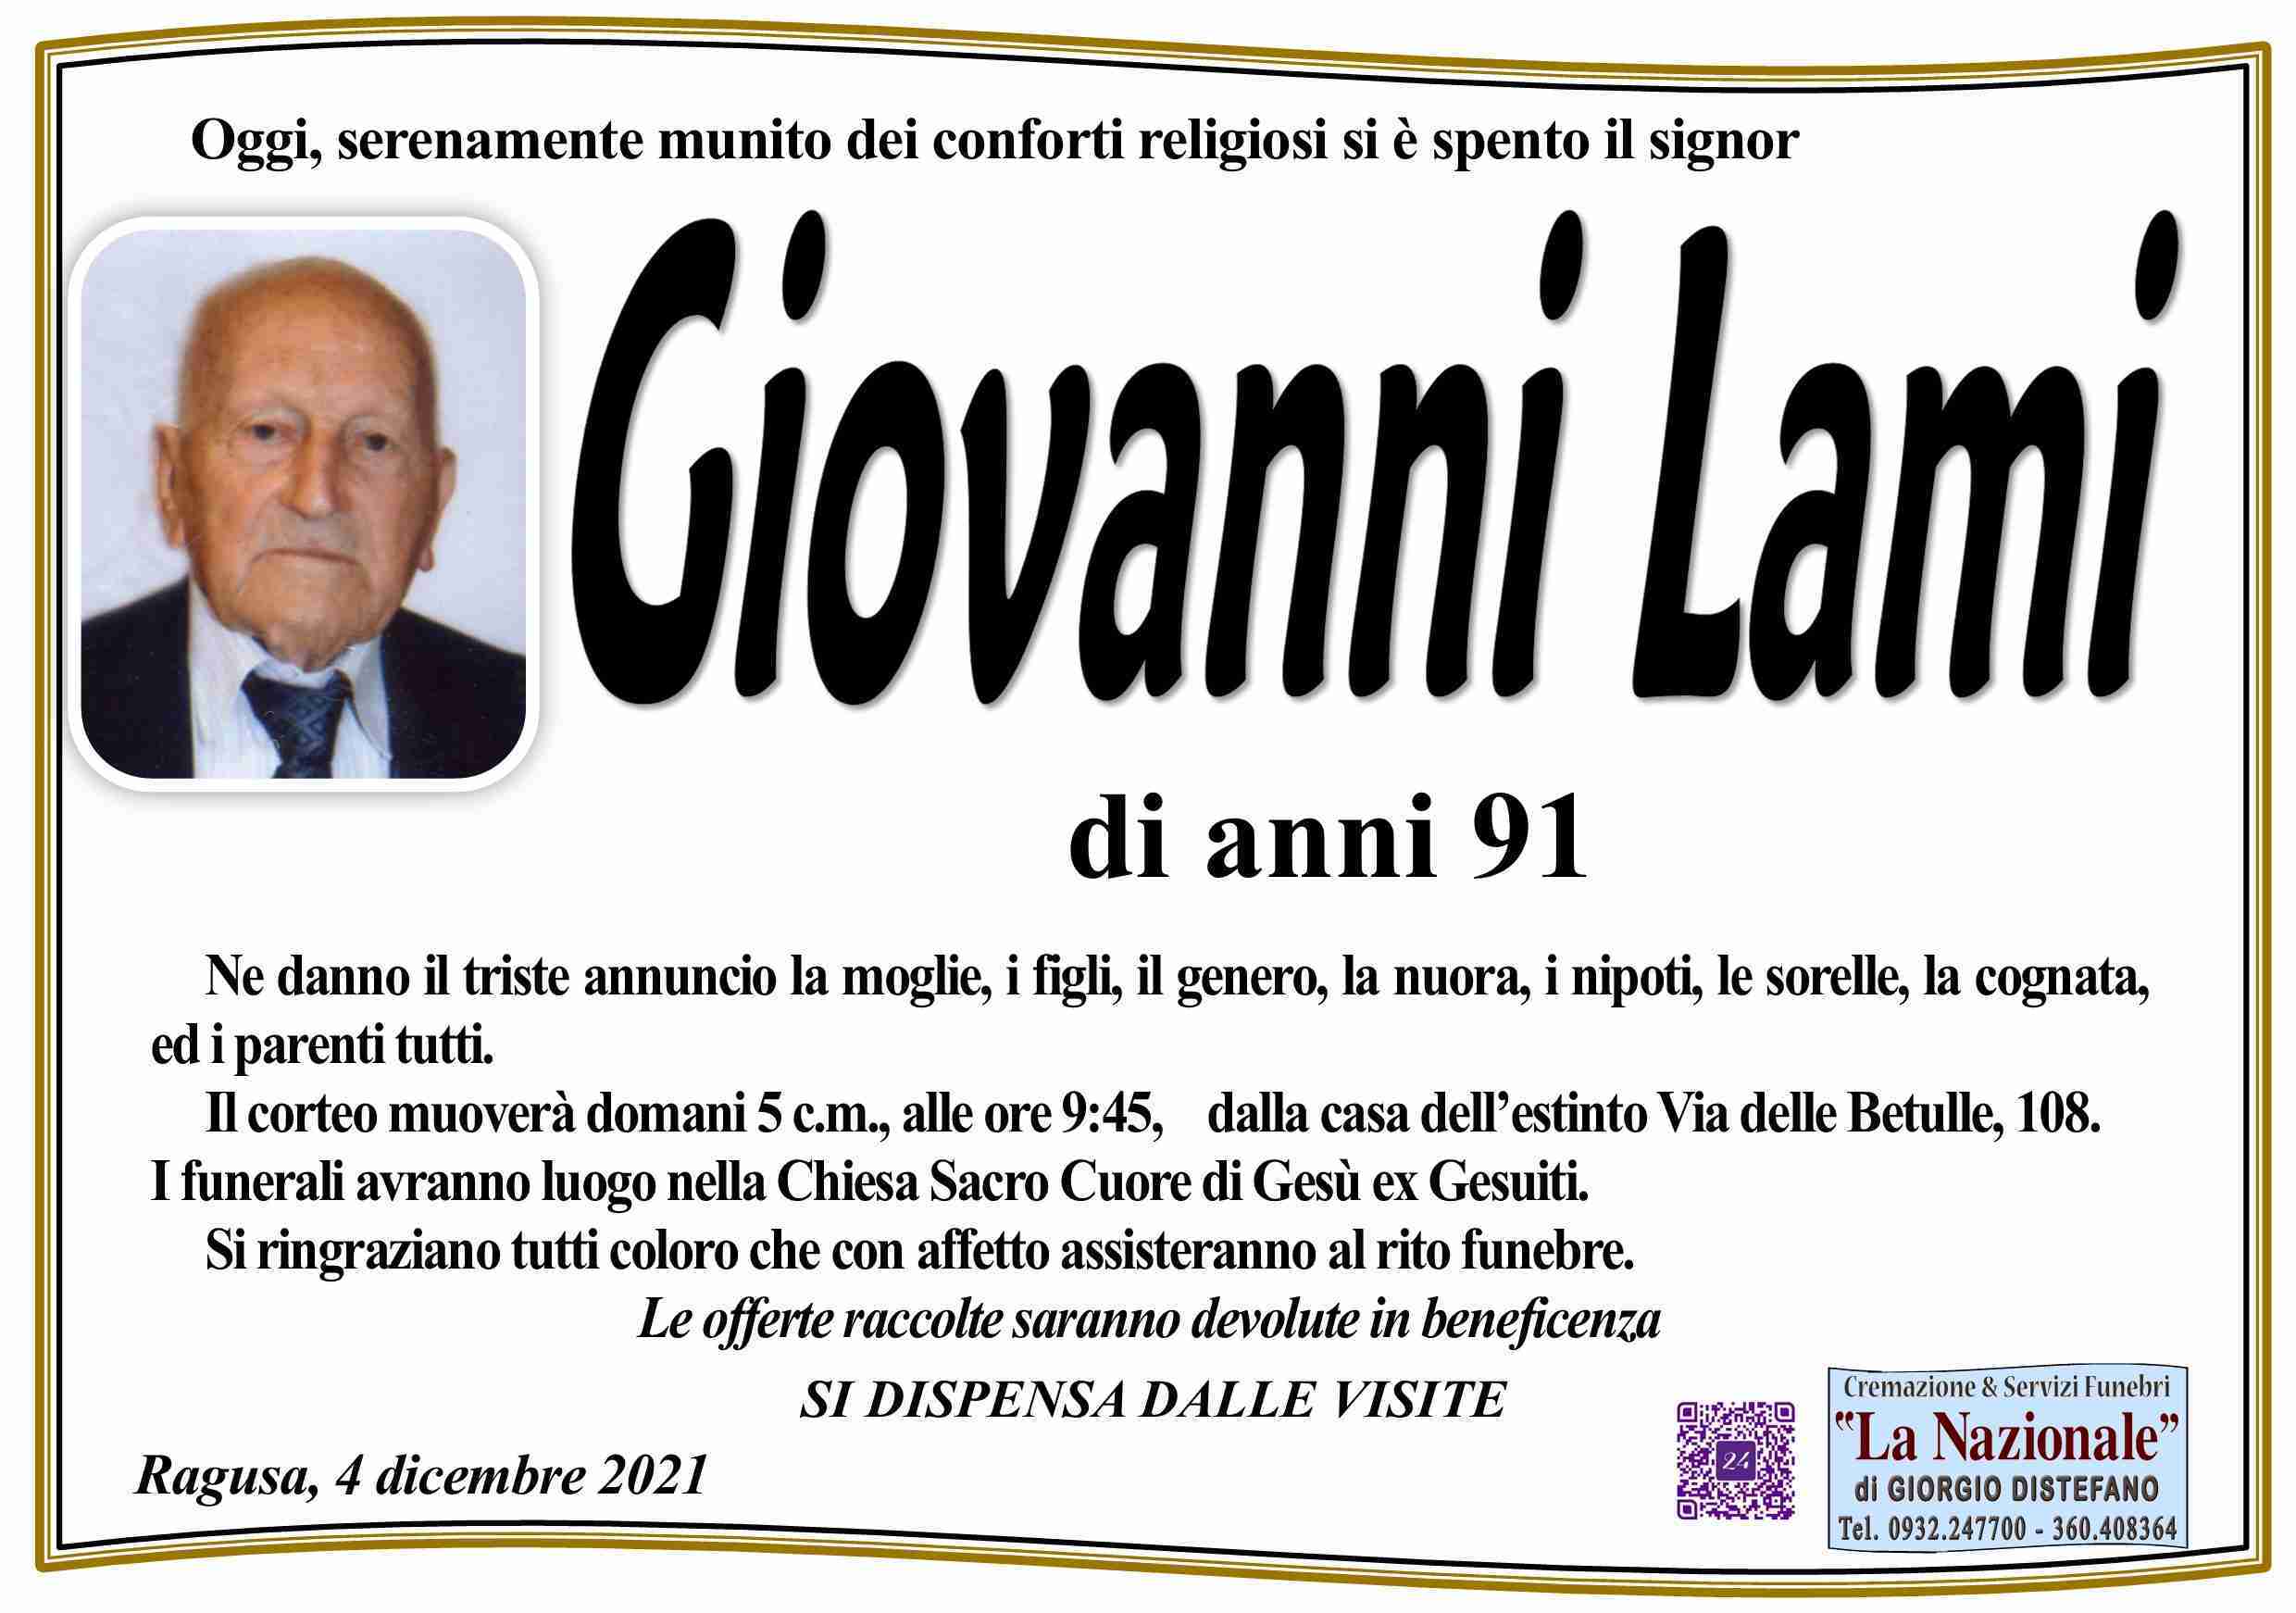 Giovanni lami